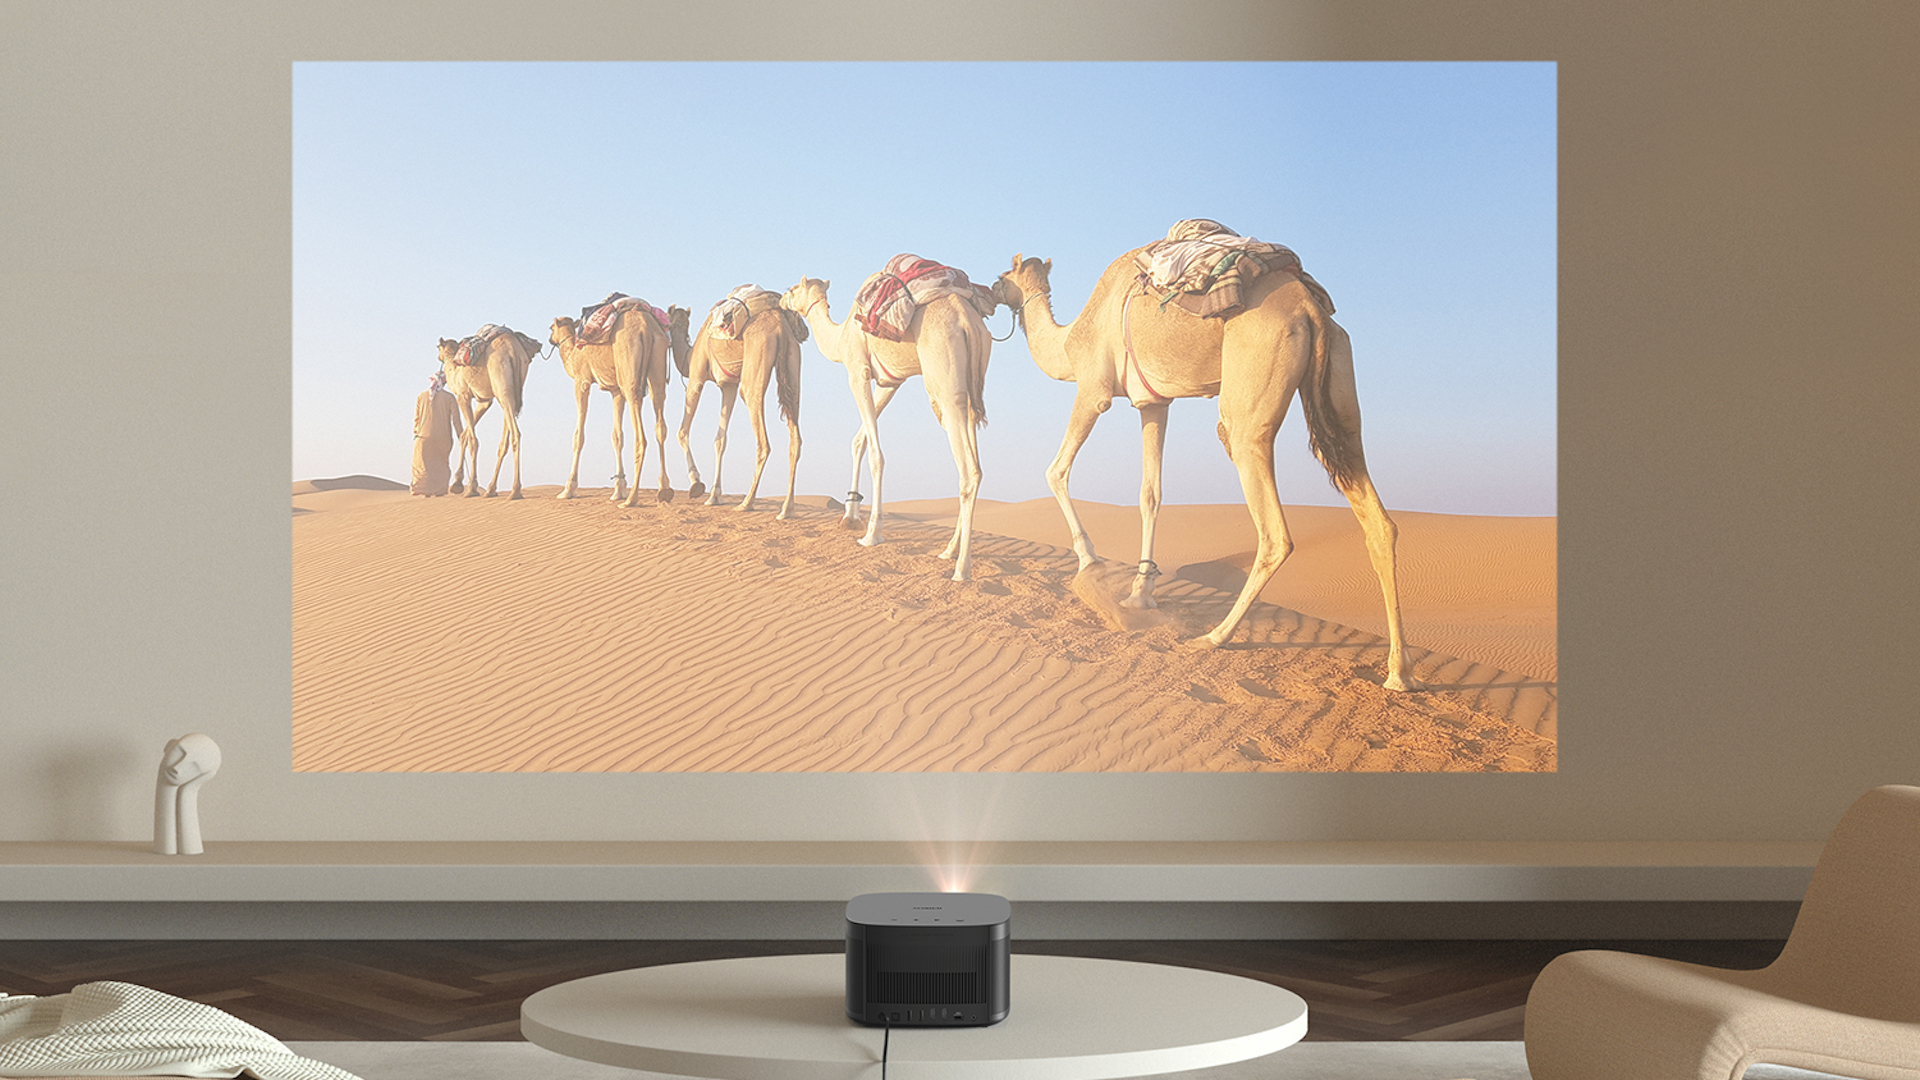 High-tech : Découvrez le vidéoprojecteur 4K Horizon Pro de Xgimi